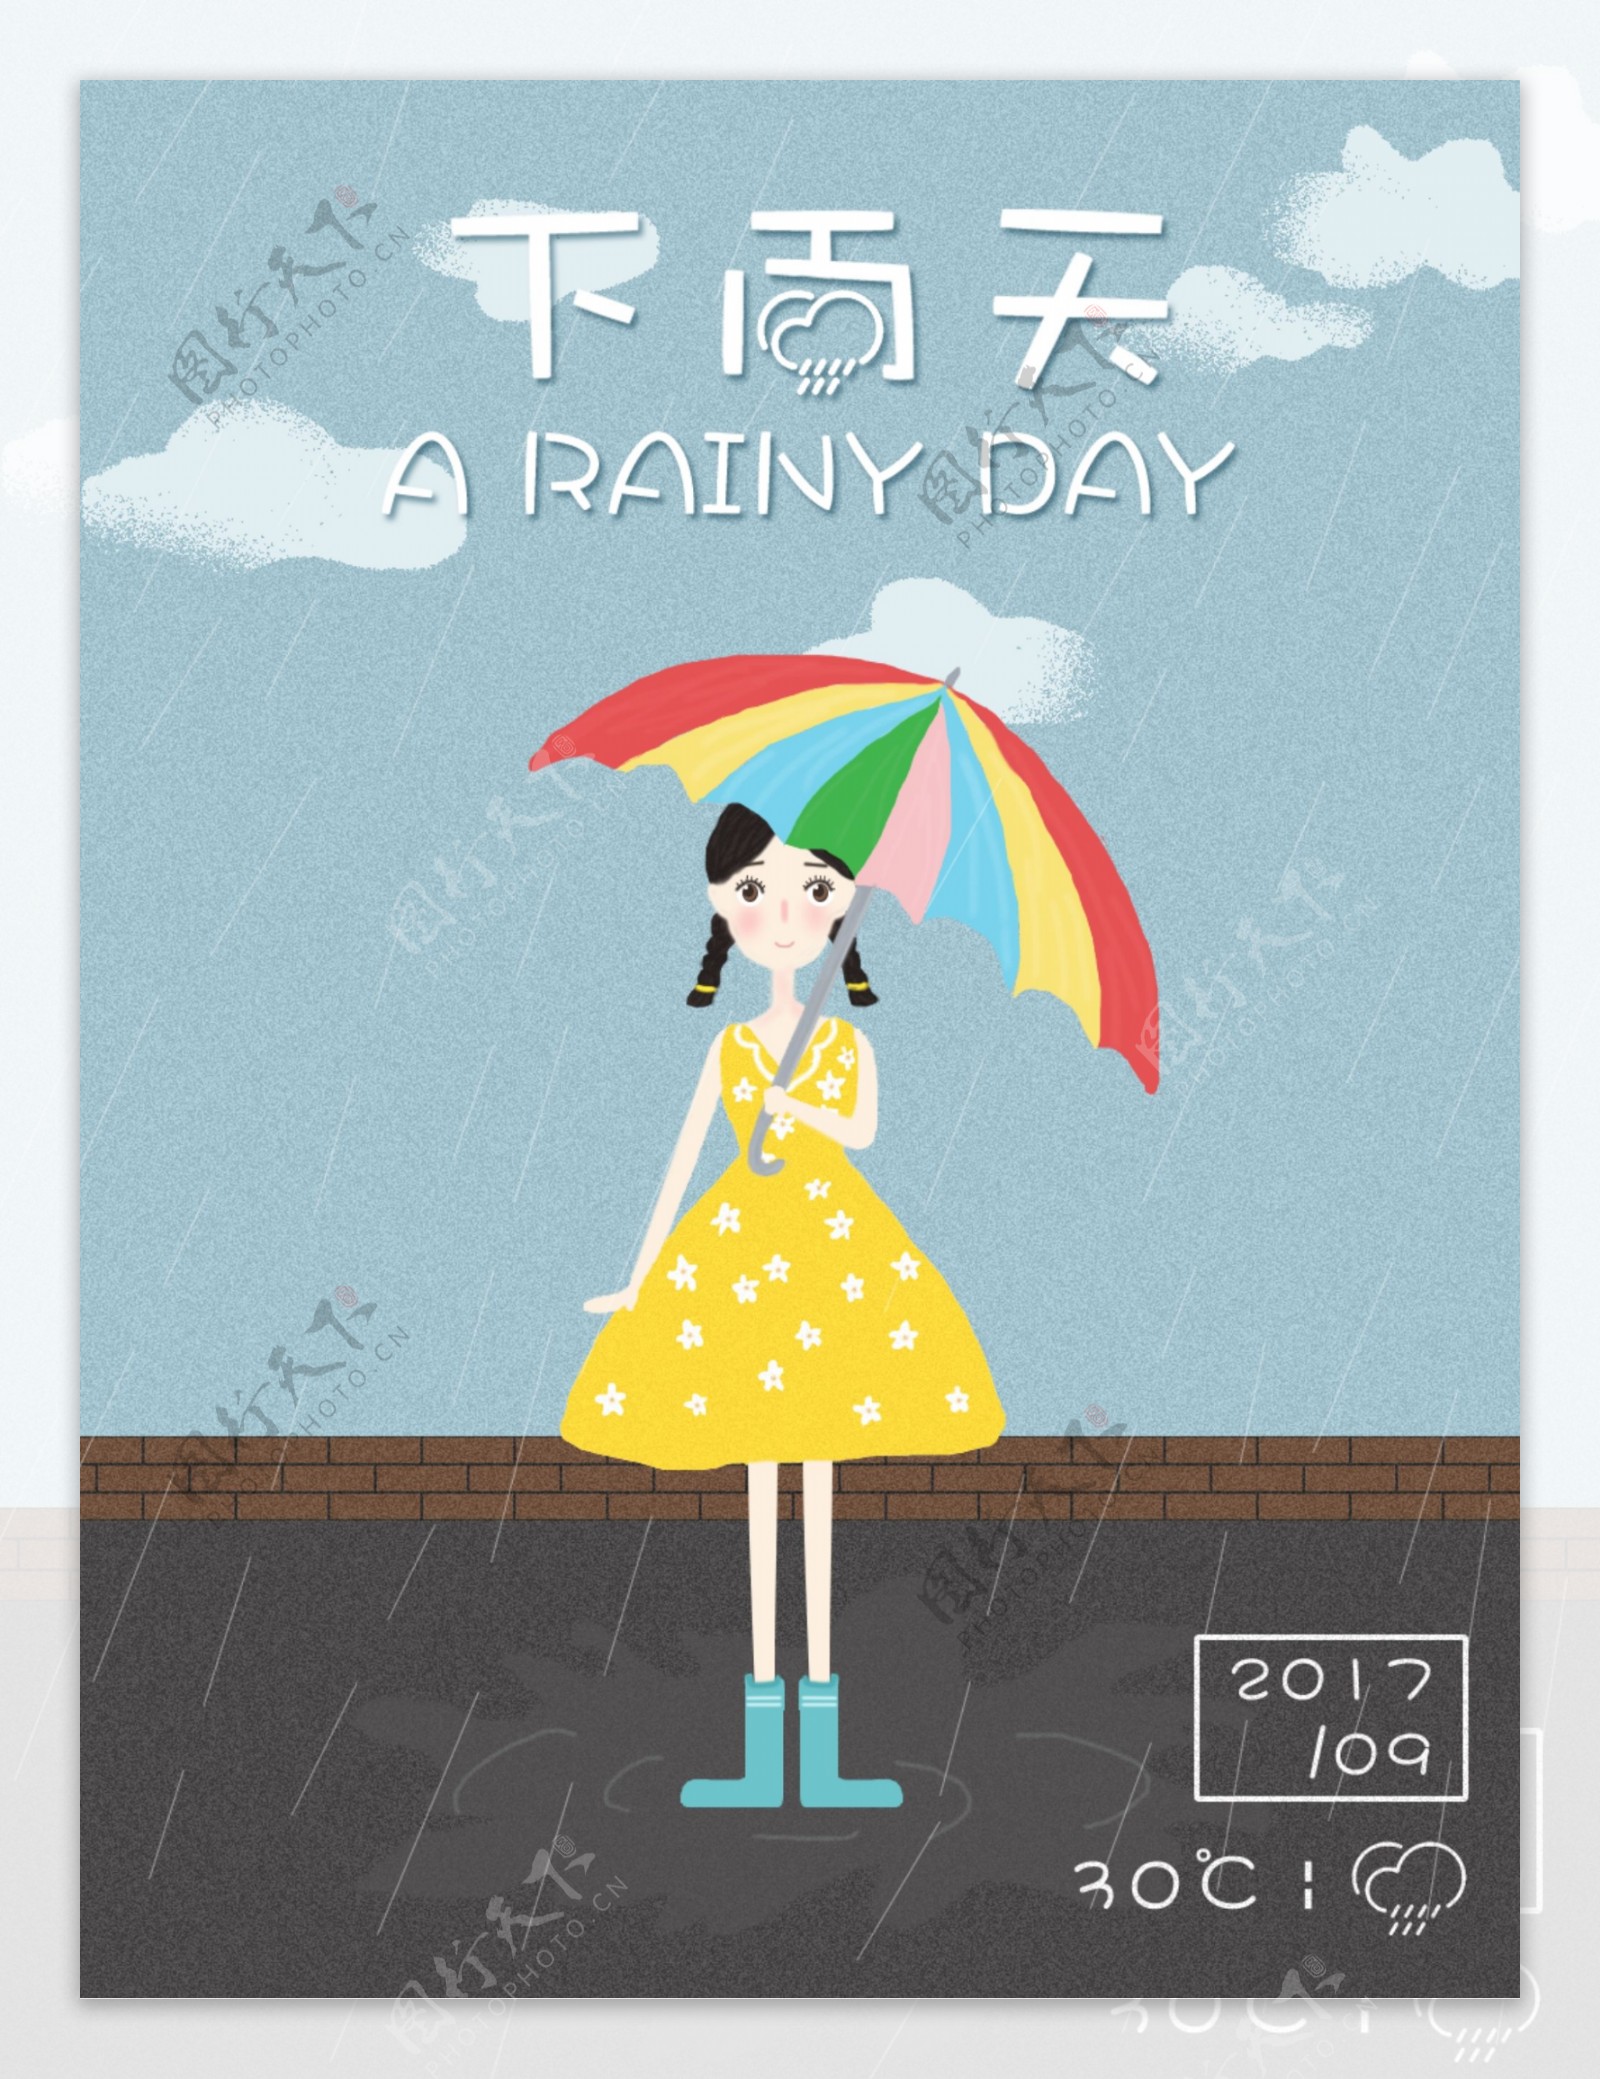 下雨天拿伞女孩手绘插画小清新创意海报设计